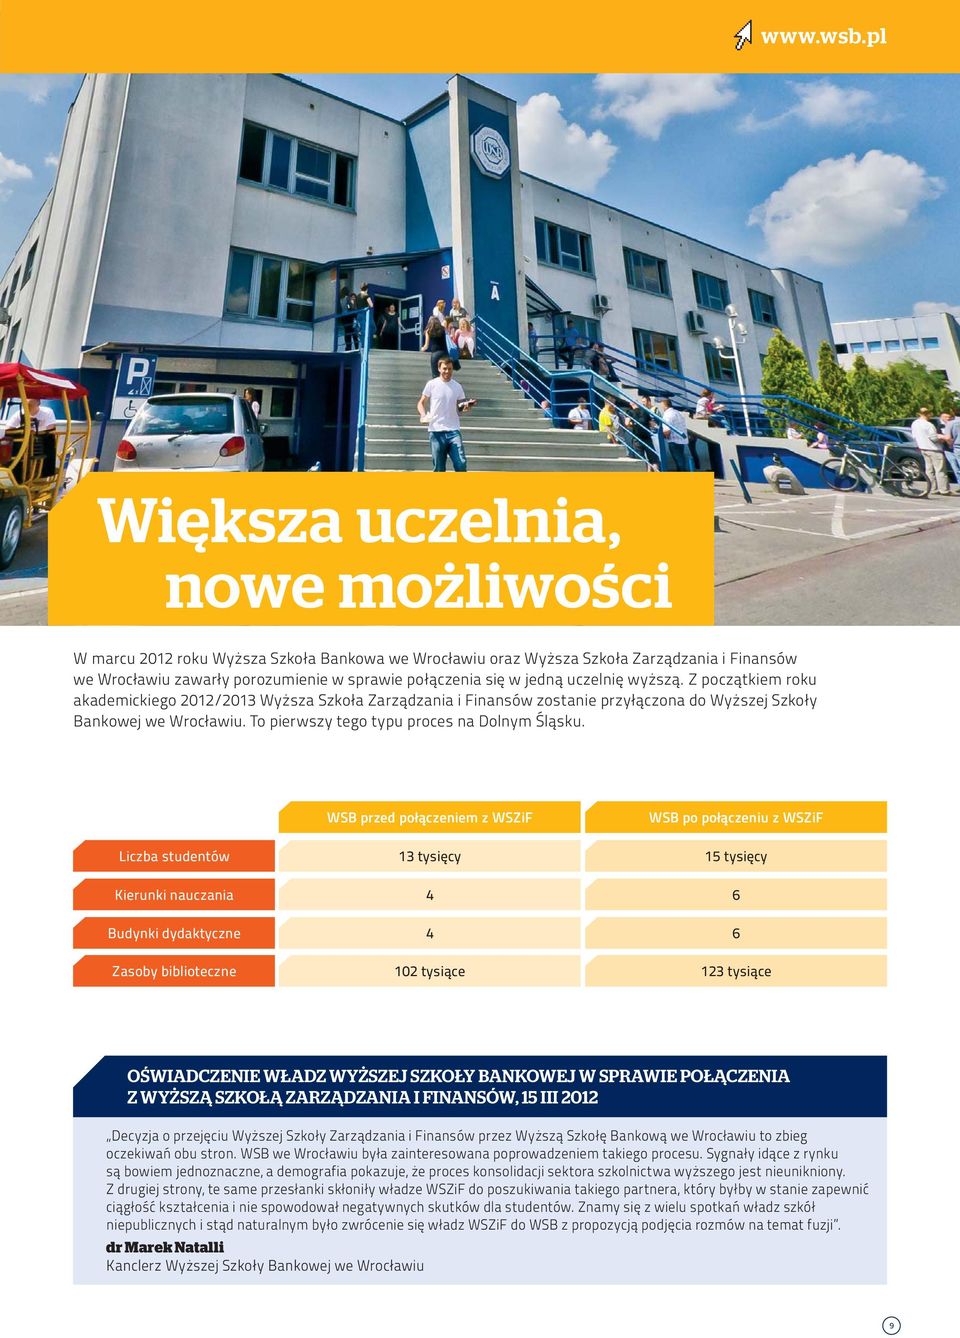 uczelnię wyższą. Z początkiem roku akademickiego 2012/2013 Wyższa Szkoła Zarządzania i Finansów zostanie przyłączona do Wyższej Szkoły Bankowej we Wrocławiu.